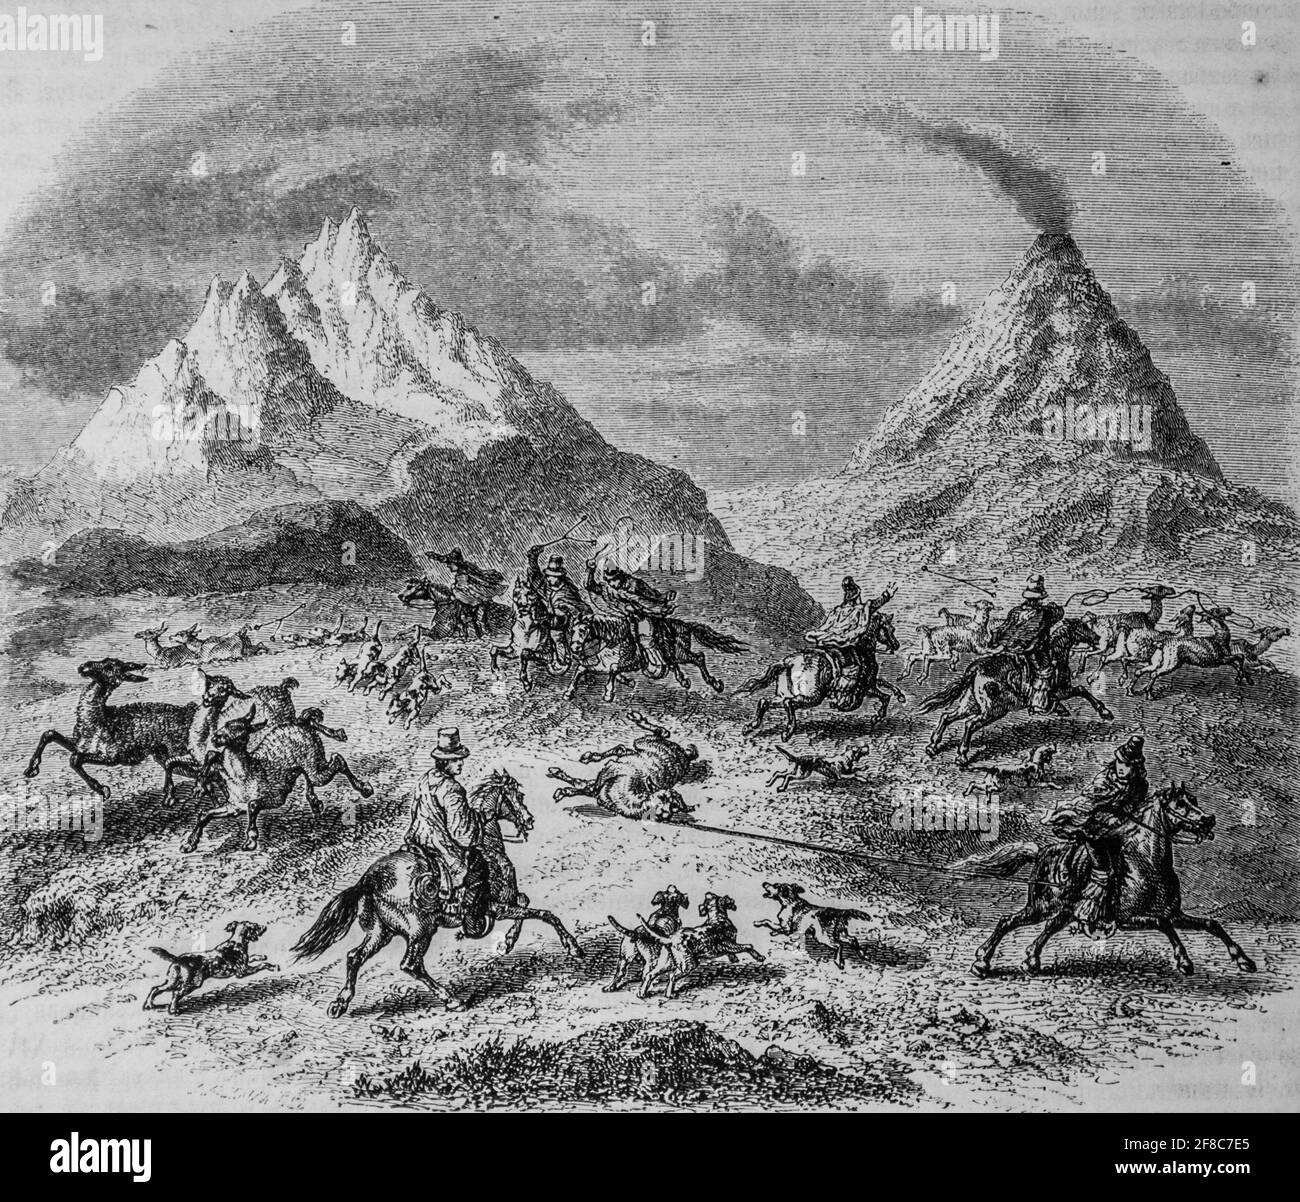 la chasse aux guanacos dans le voisinage du volcan d'antuco, le magazin pittoresque par m. edouard charton 1870 Foto Stock